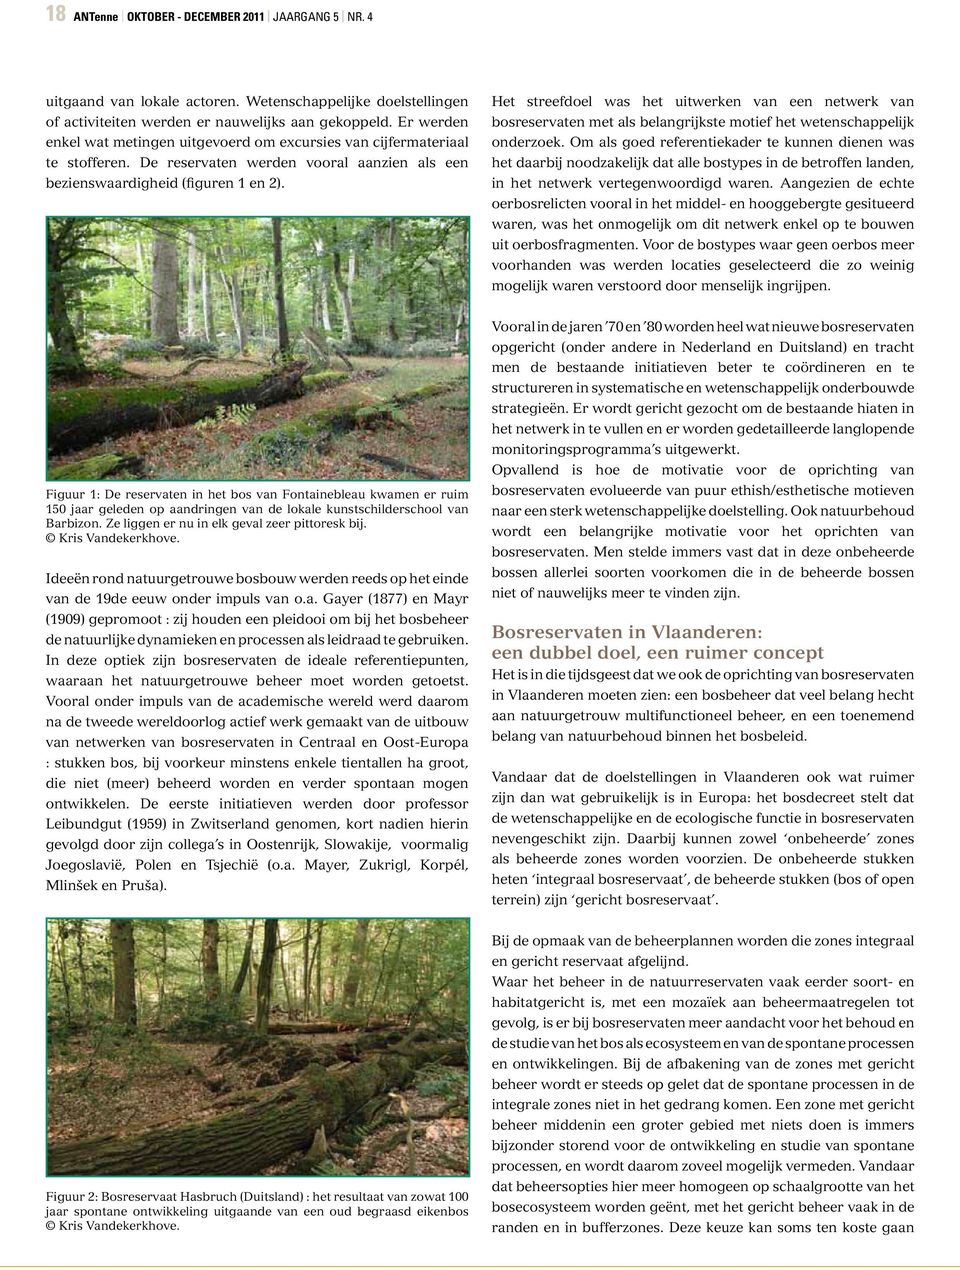 Het streefdoel was het uitwerken van een netwerk van bosreservaten met als belangrijkste motief het wetenschappelijk onderzoek.